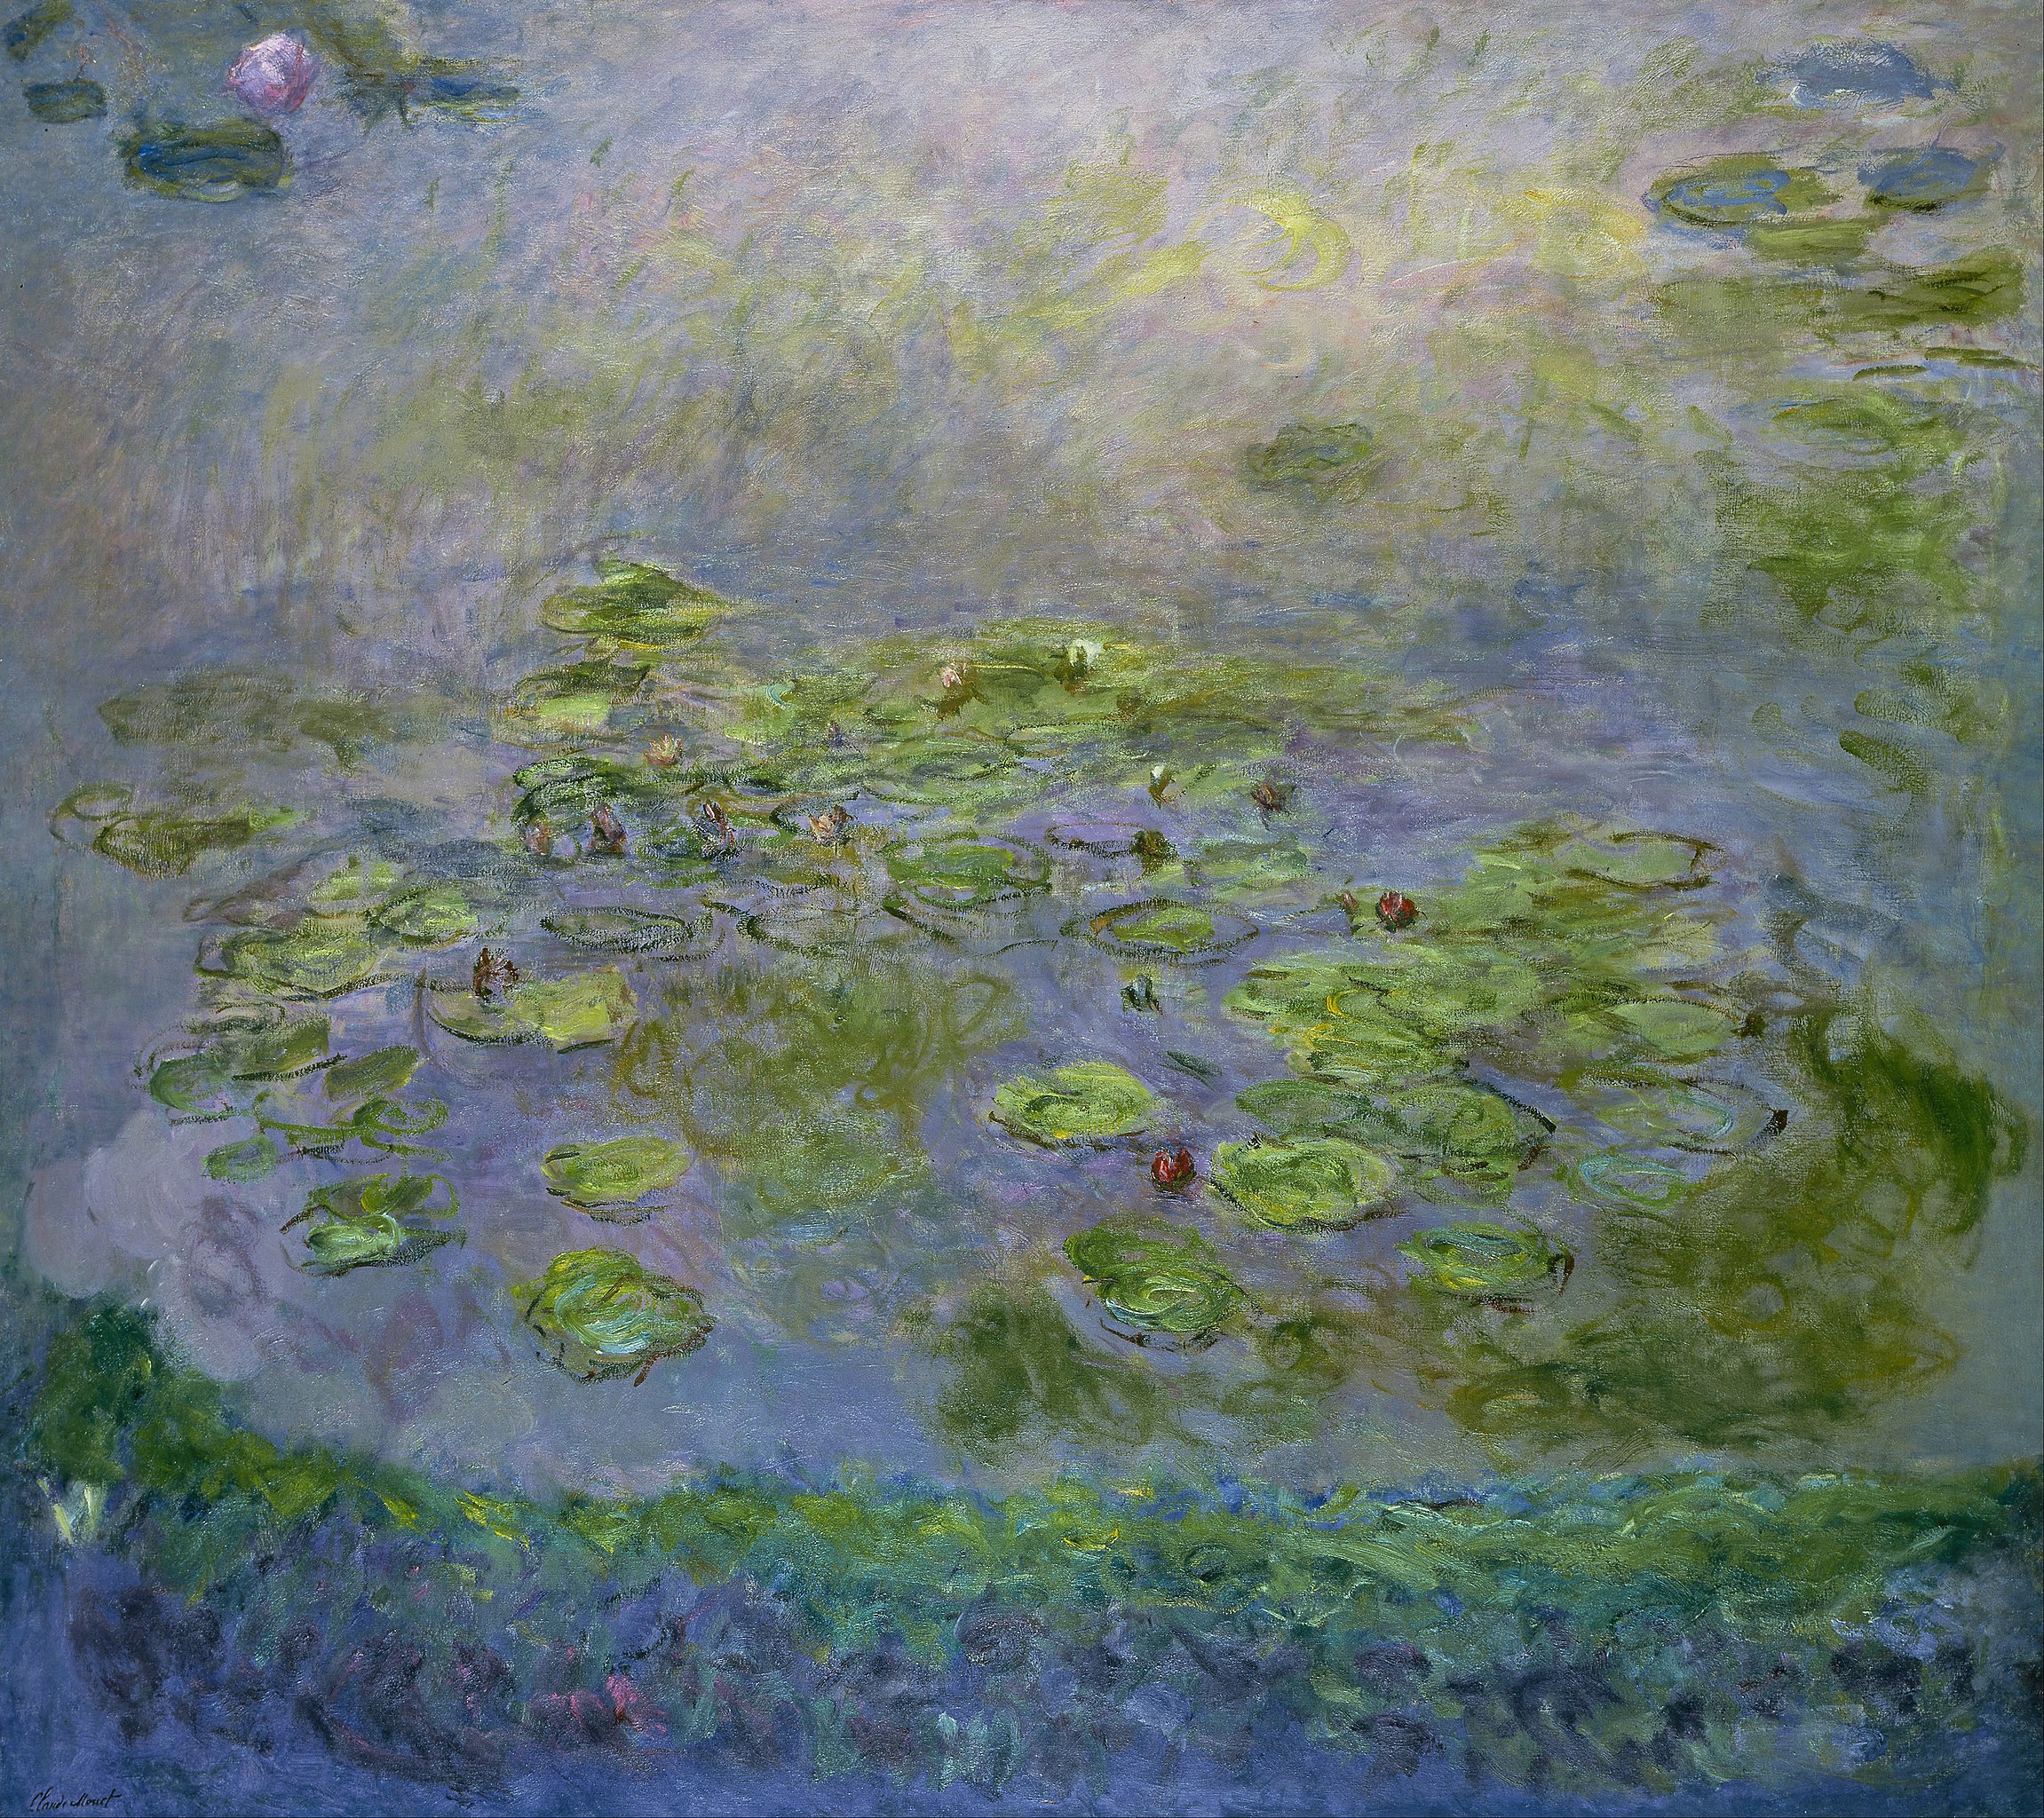 नीलकमल by Claude Monet - सी। १९१४-१७ - २०१.६ x १८१ सेमी 